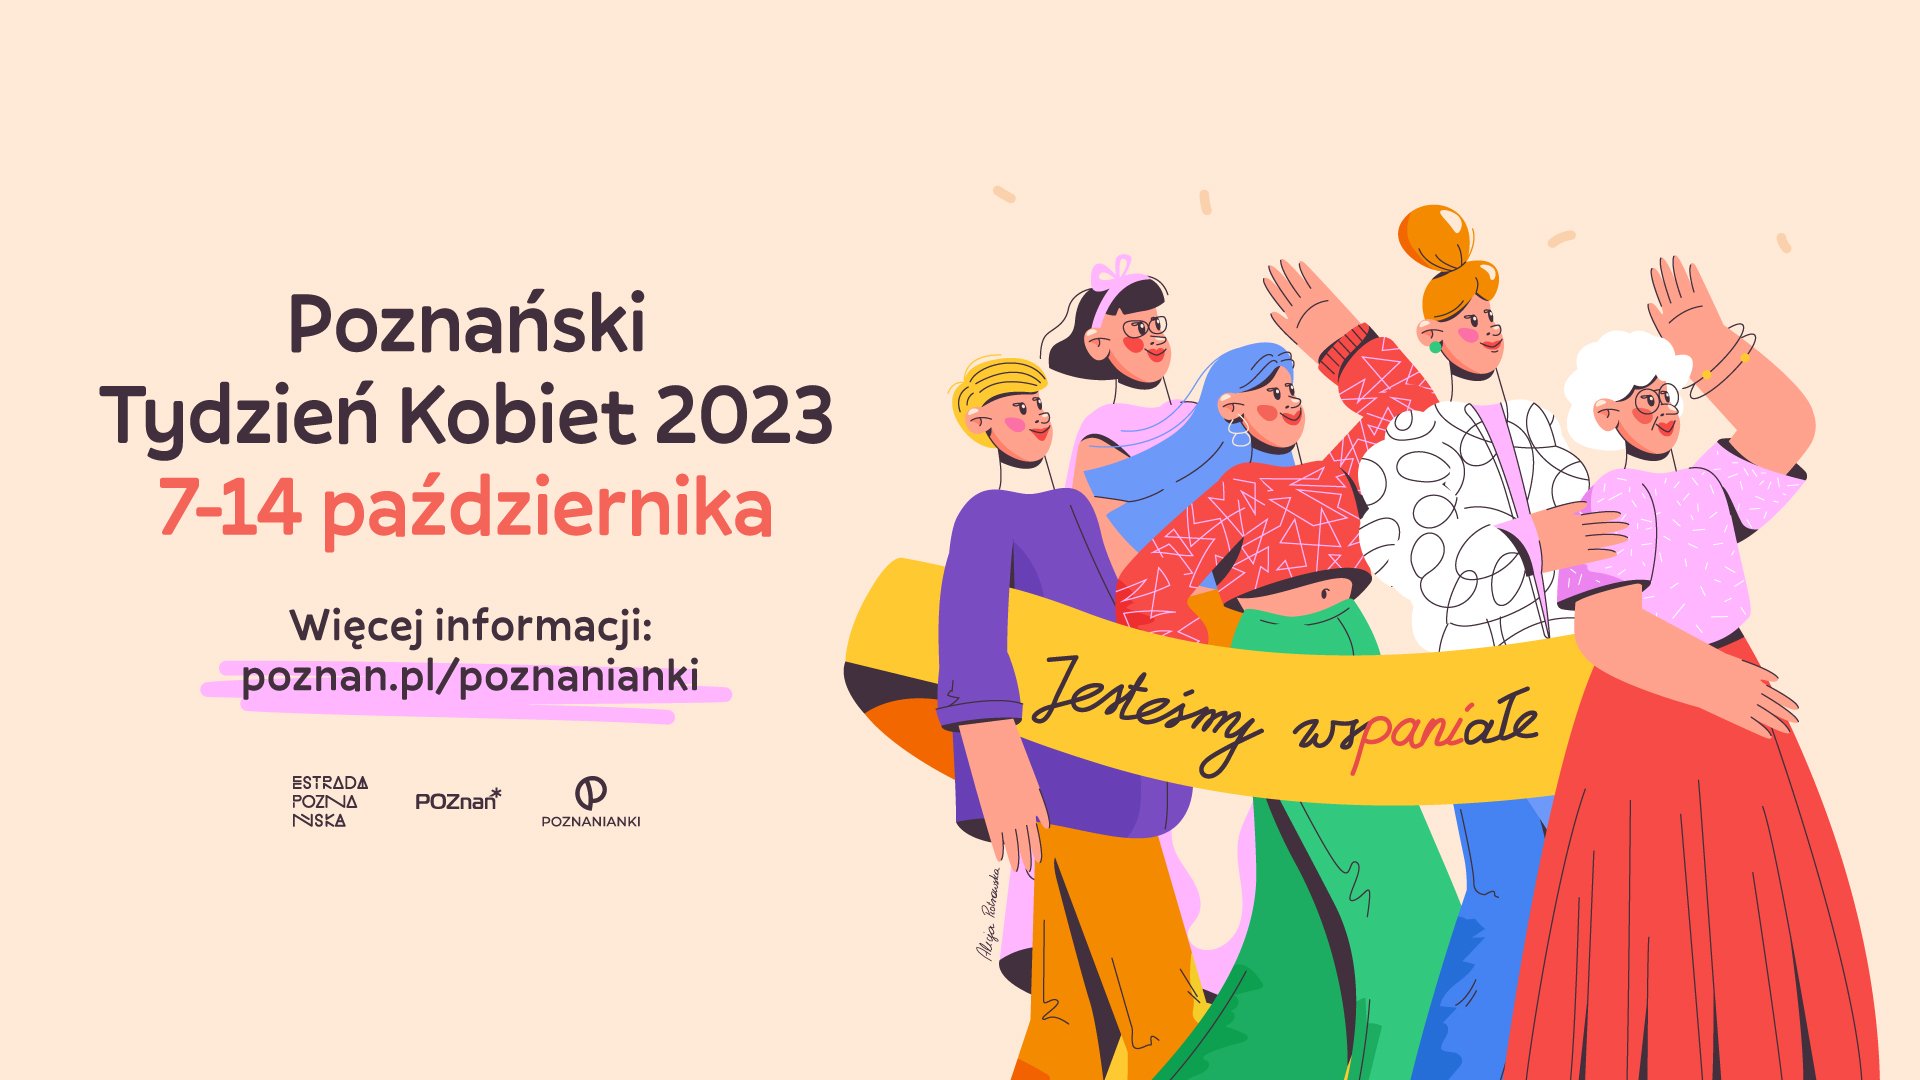 Grafika - poznański tydzień kobiet, najważniejsze informacje o wydarzeniu i rysunek maszerujących kobiet